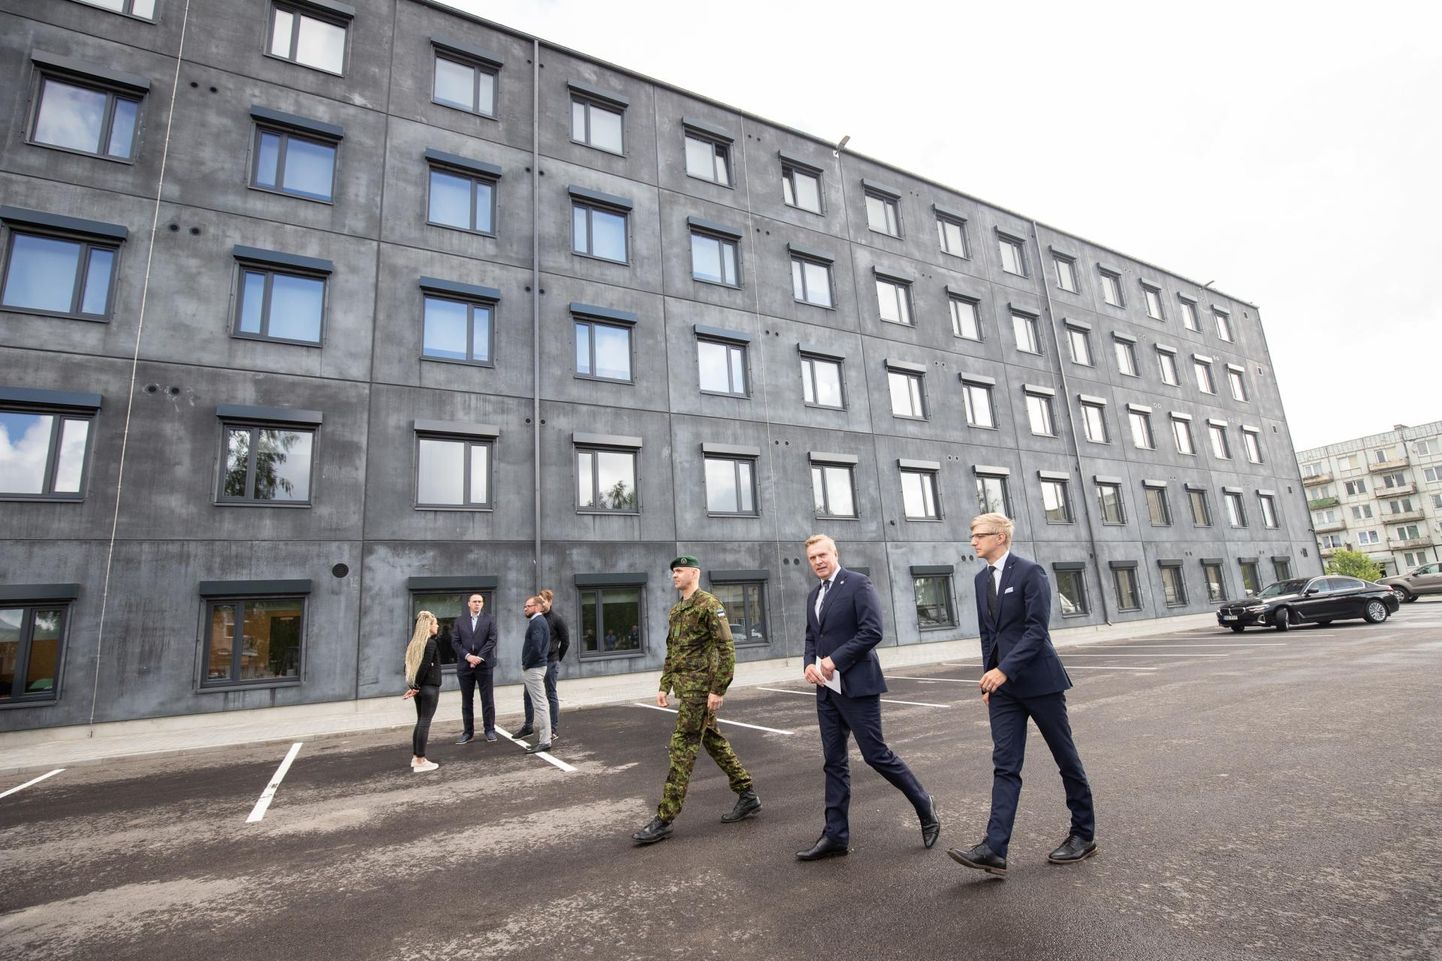 Hoone avamisel käisid kolonel Vahur Karus (vasakult), minister Kalle Laanet ja nõunik Kristo Enn Vaga